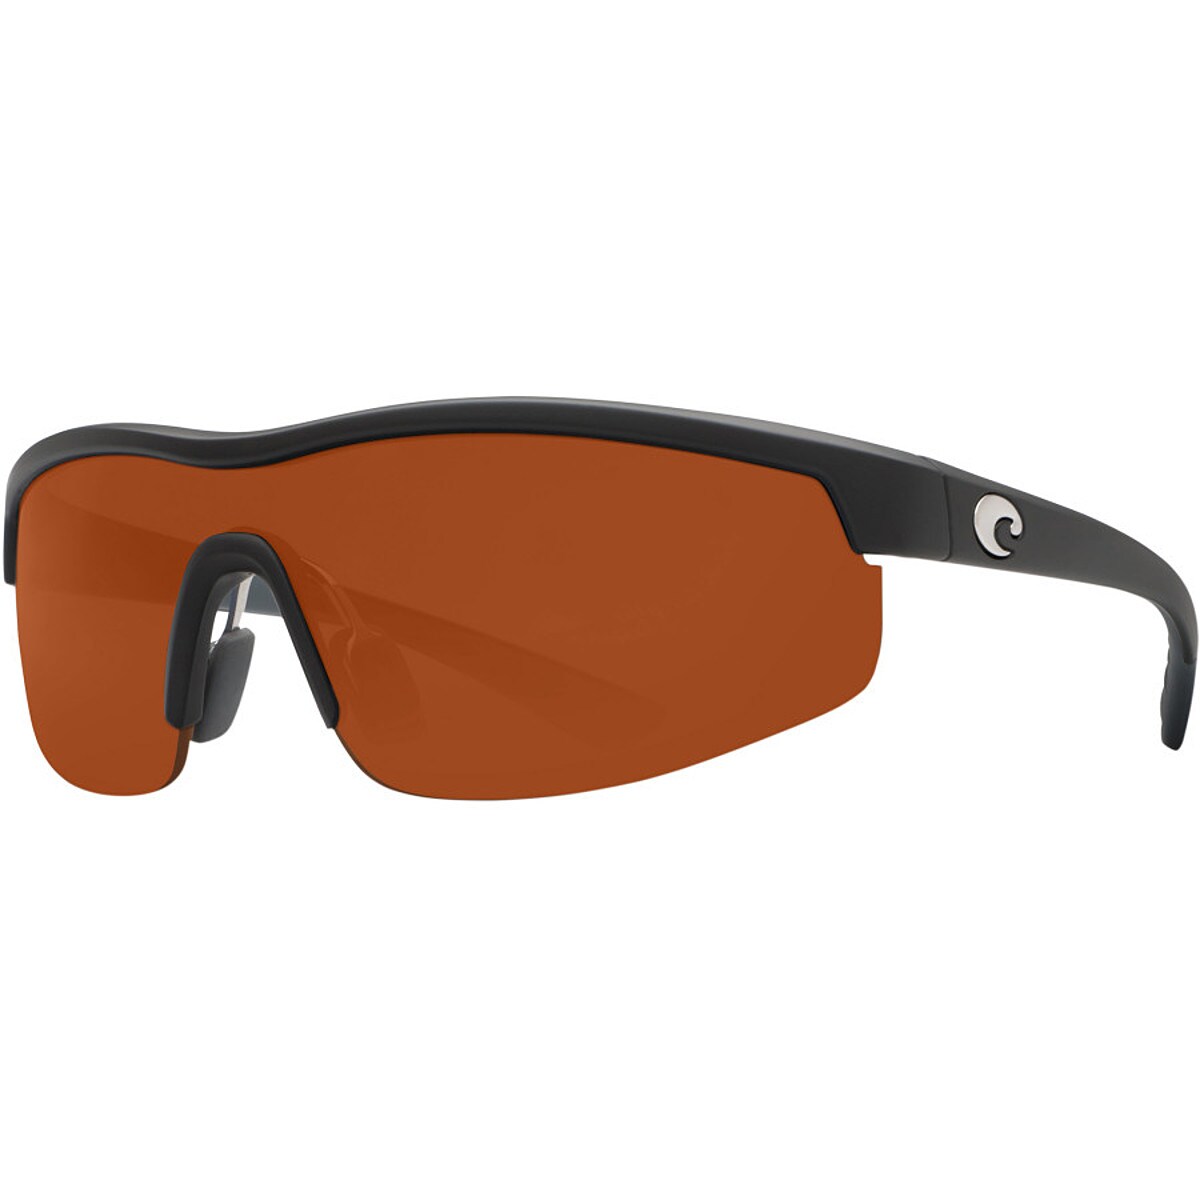 Costa Straits 580P Sunglasses Polarized Men's